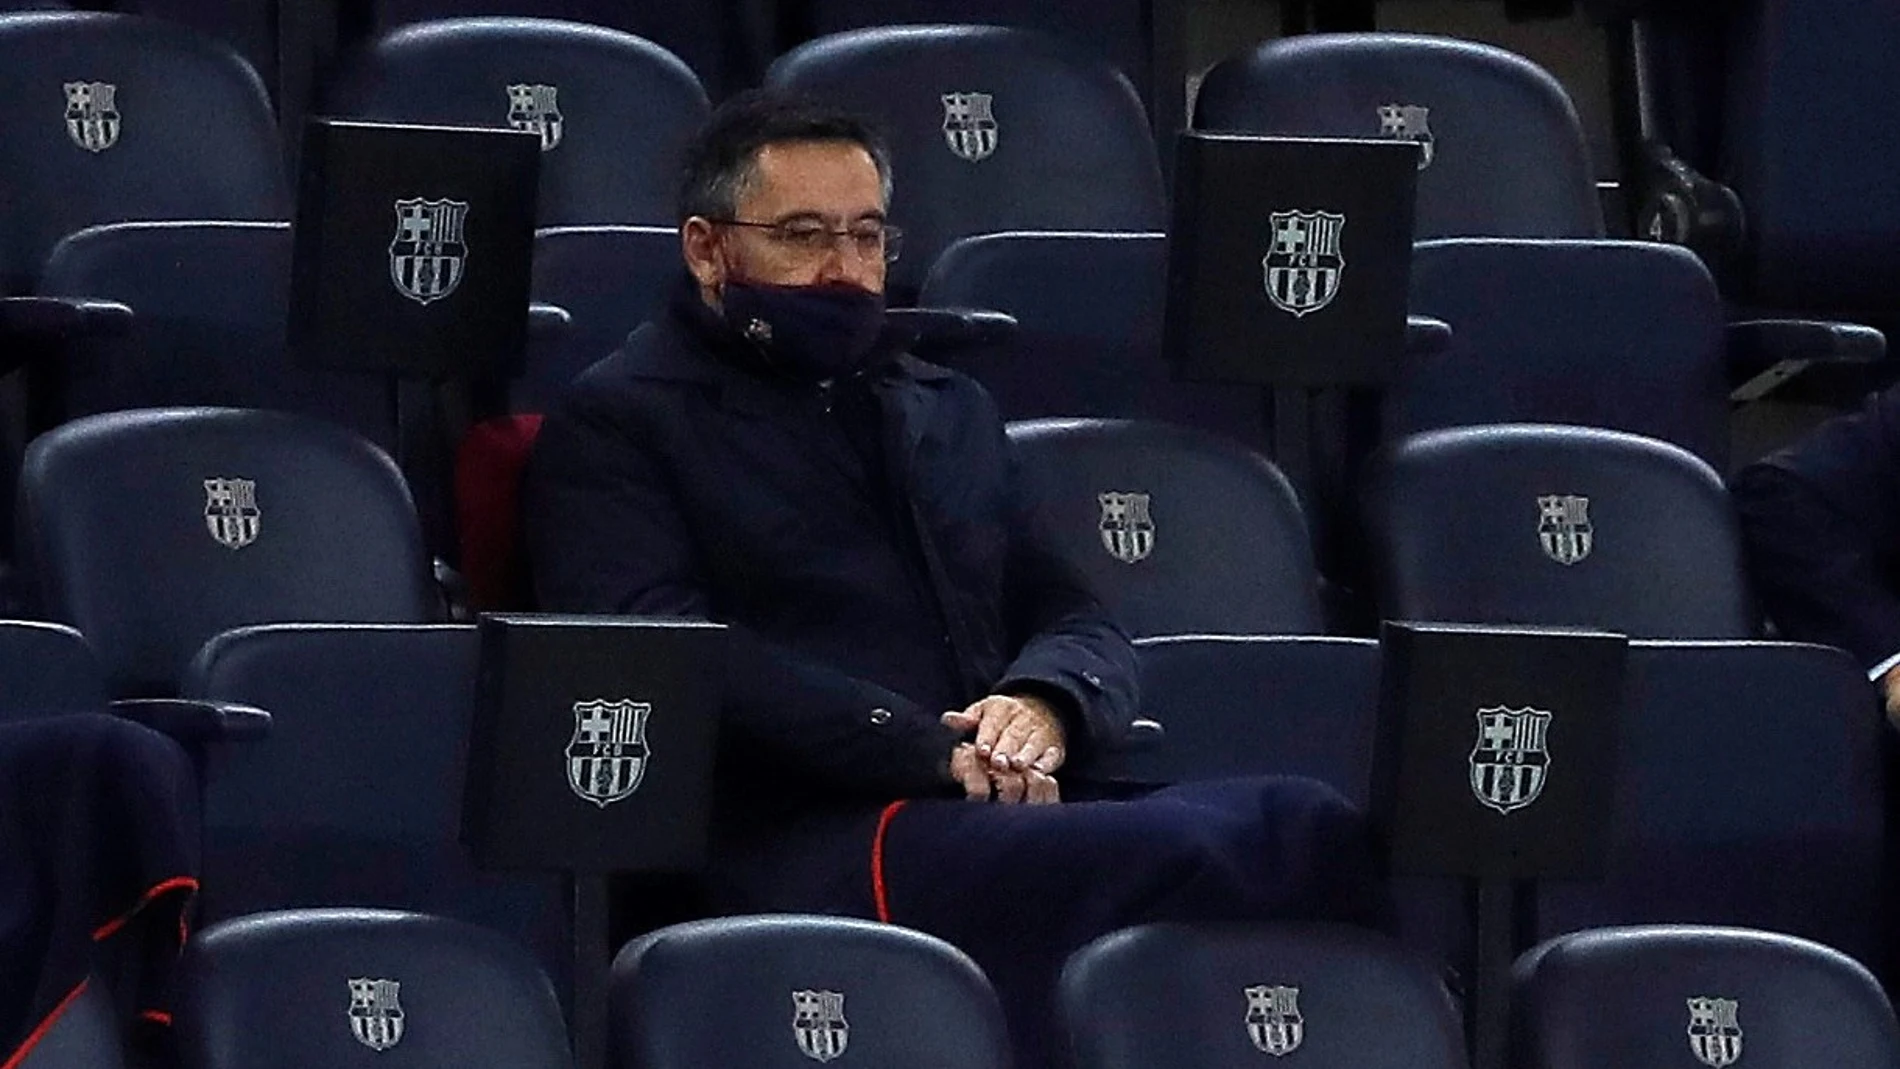 El presidente del FC Barcelona Josep Maria Bartomeu en la grada en un partido de Liga. EFE/Alberto Estévez